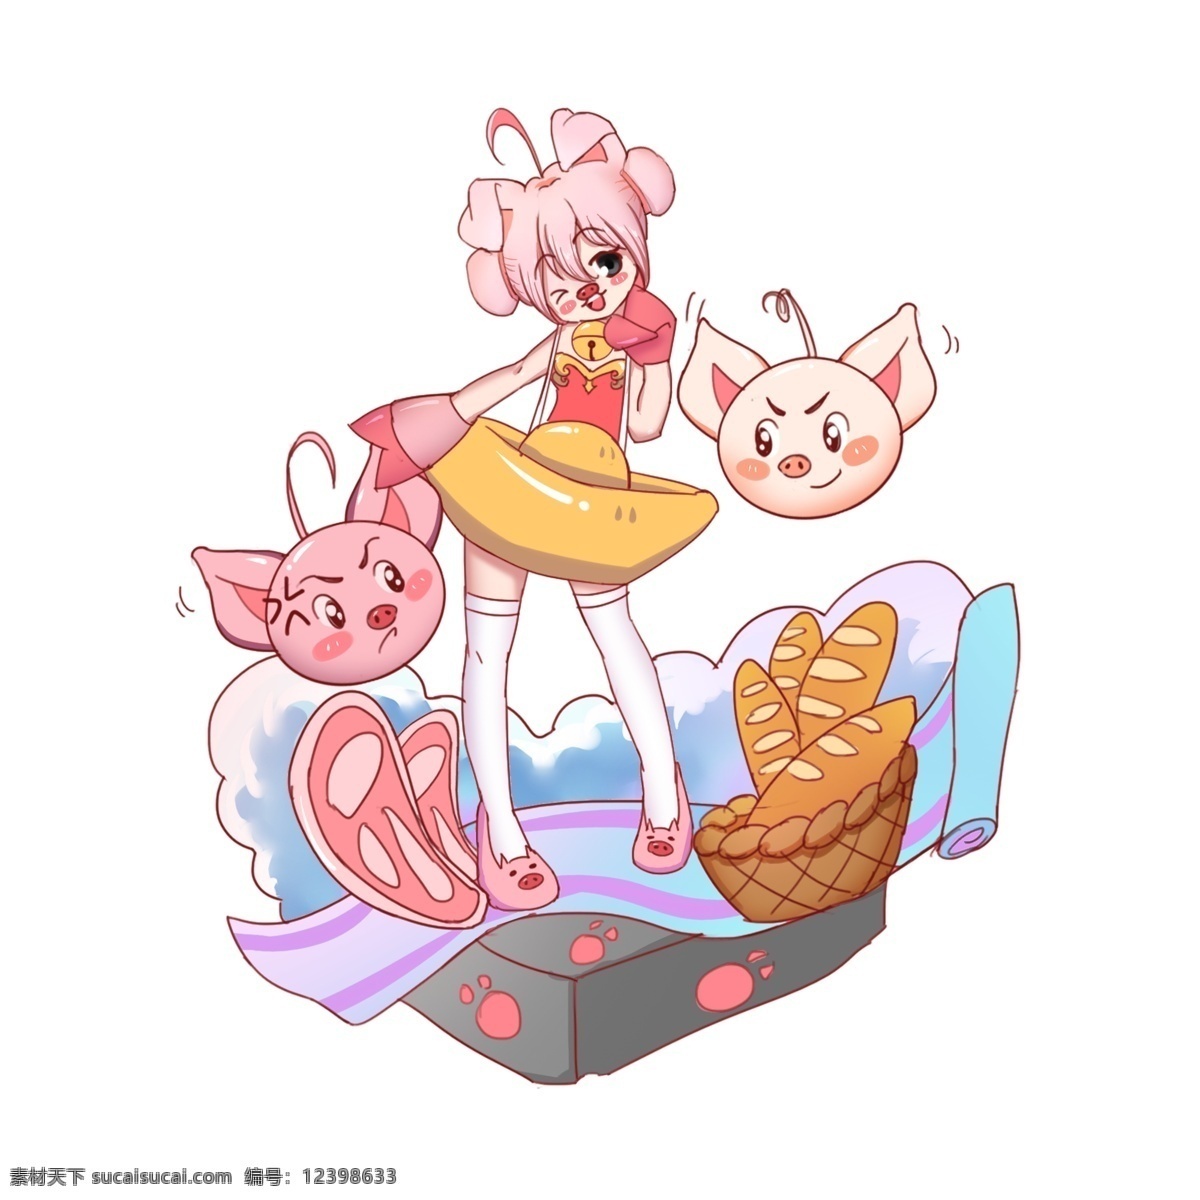 卡通 猪 女孩 矢量 卡通女孩 可爱 云朵 食物 2019 新年 卡通小猪 粉色 两只小猪 元宝